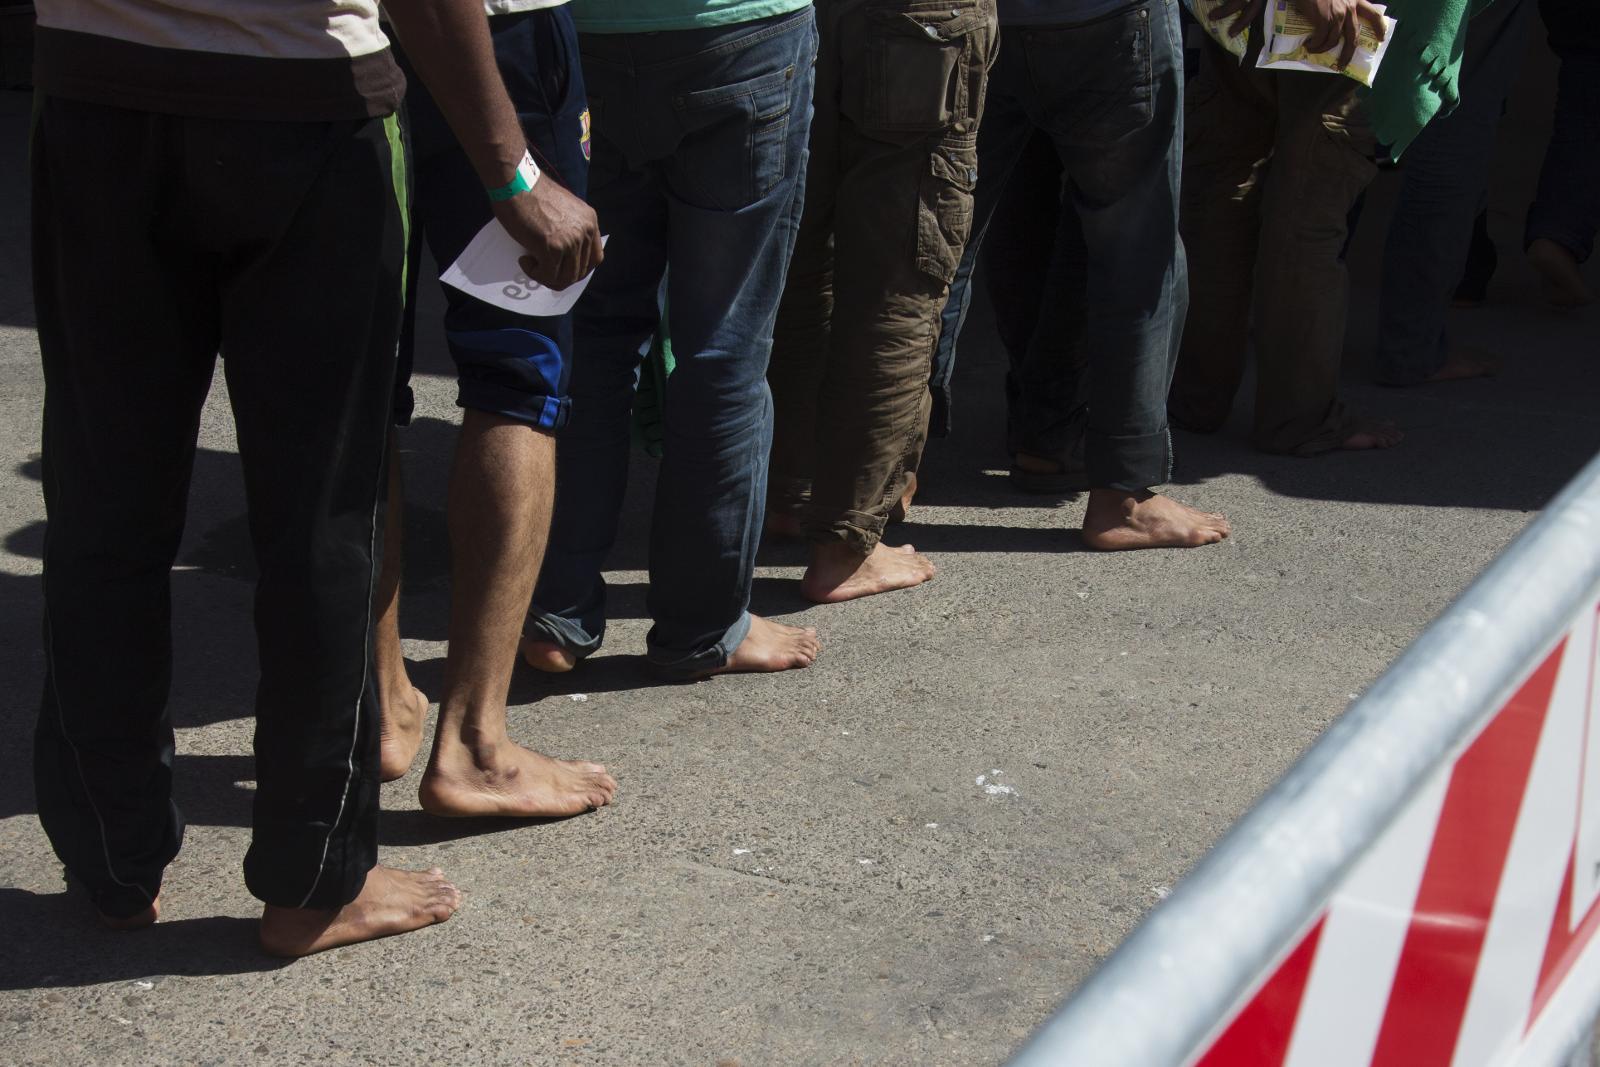 Flyktningene har nådd sitt mål, de er i Europa. På Sardinia venter italienske myndigheter. Alle skal registreres med bilde og fingeravtrykk. De får utdelt vann, kjeks og noen ganger klær og sko. Flyktningene som kommer barbente, har antagelig sittet i en av gummibåtene. Plasten i disse farkostene er av så dårlig kvalitet at alle sko med hæler må settes igjen i Libya.